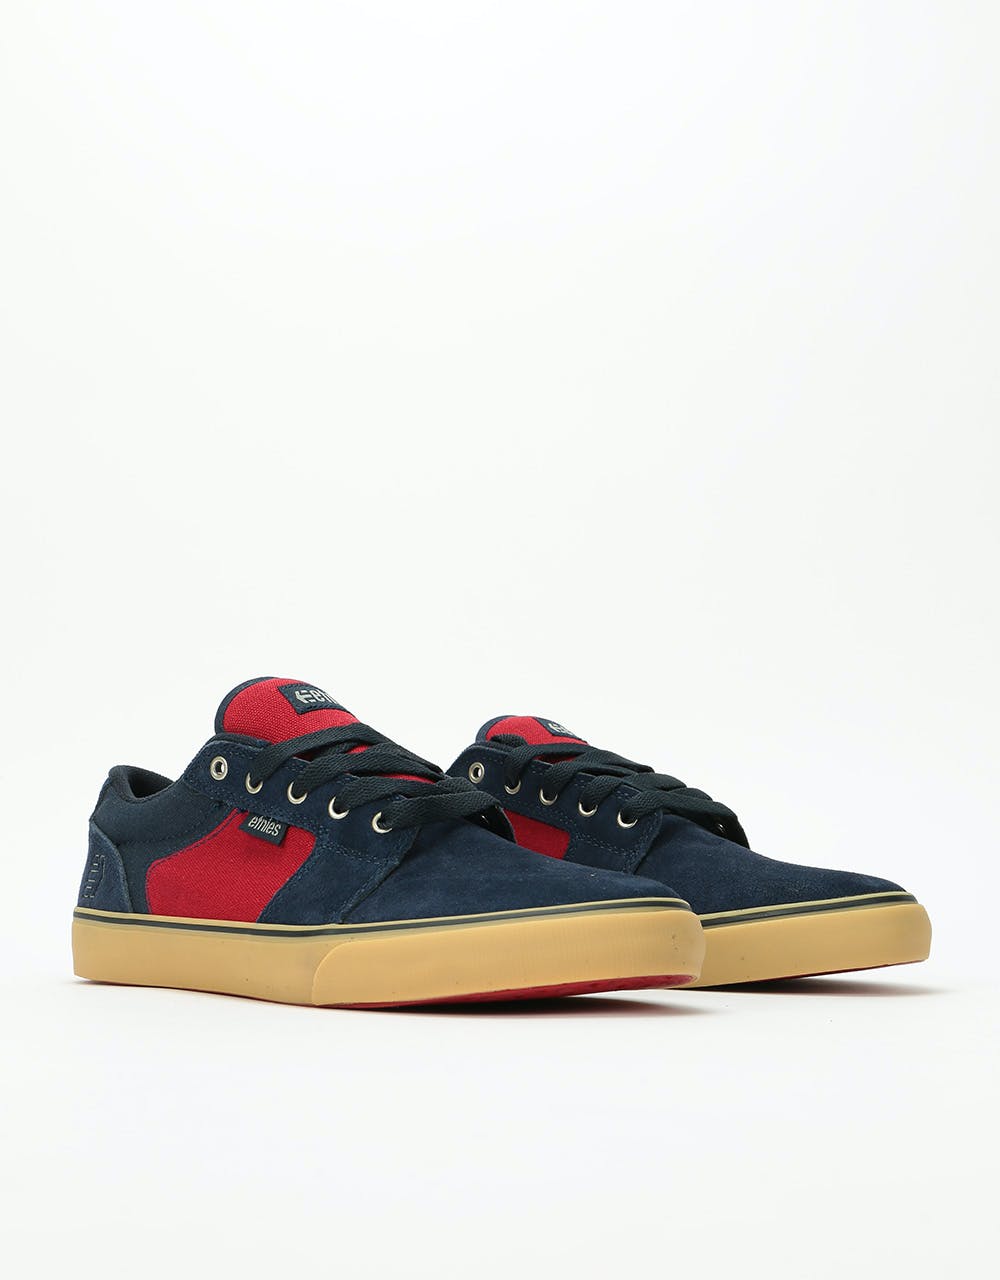 Etnies Barge LS Skate Shoes - Navy/Red/Gum